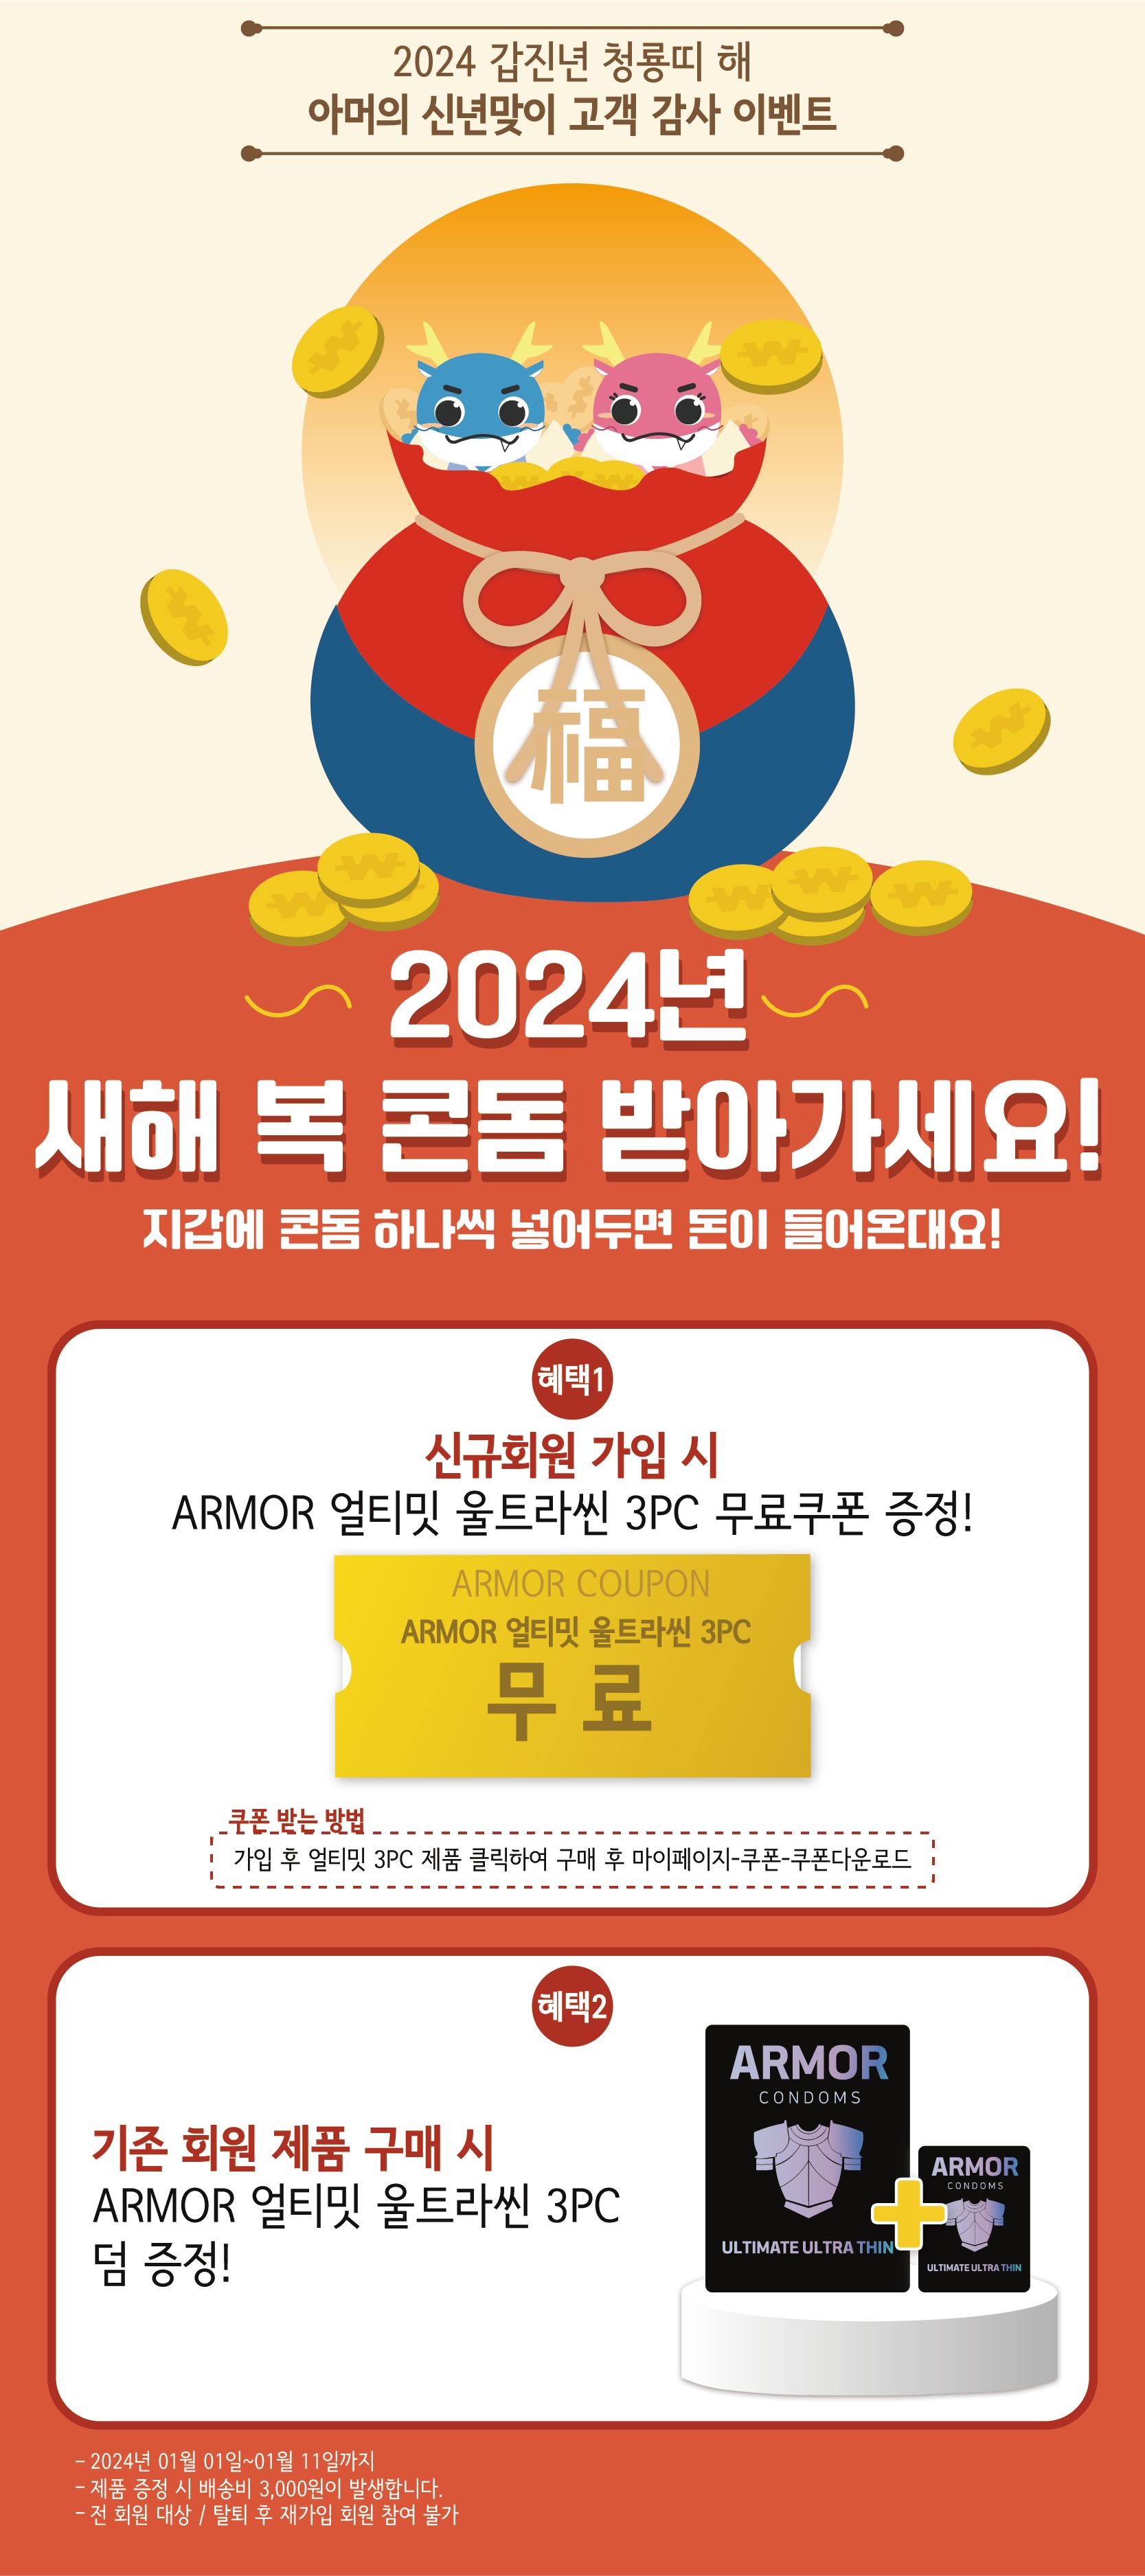 2024-01-01 아머 새해복 회원가입 이벤트.png.jpg